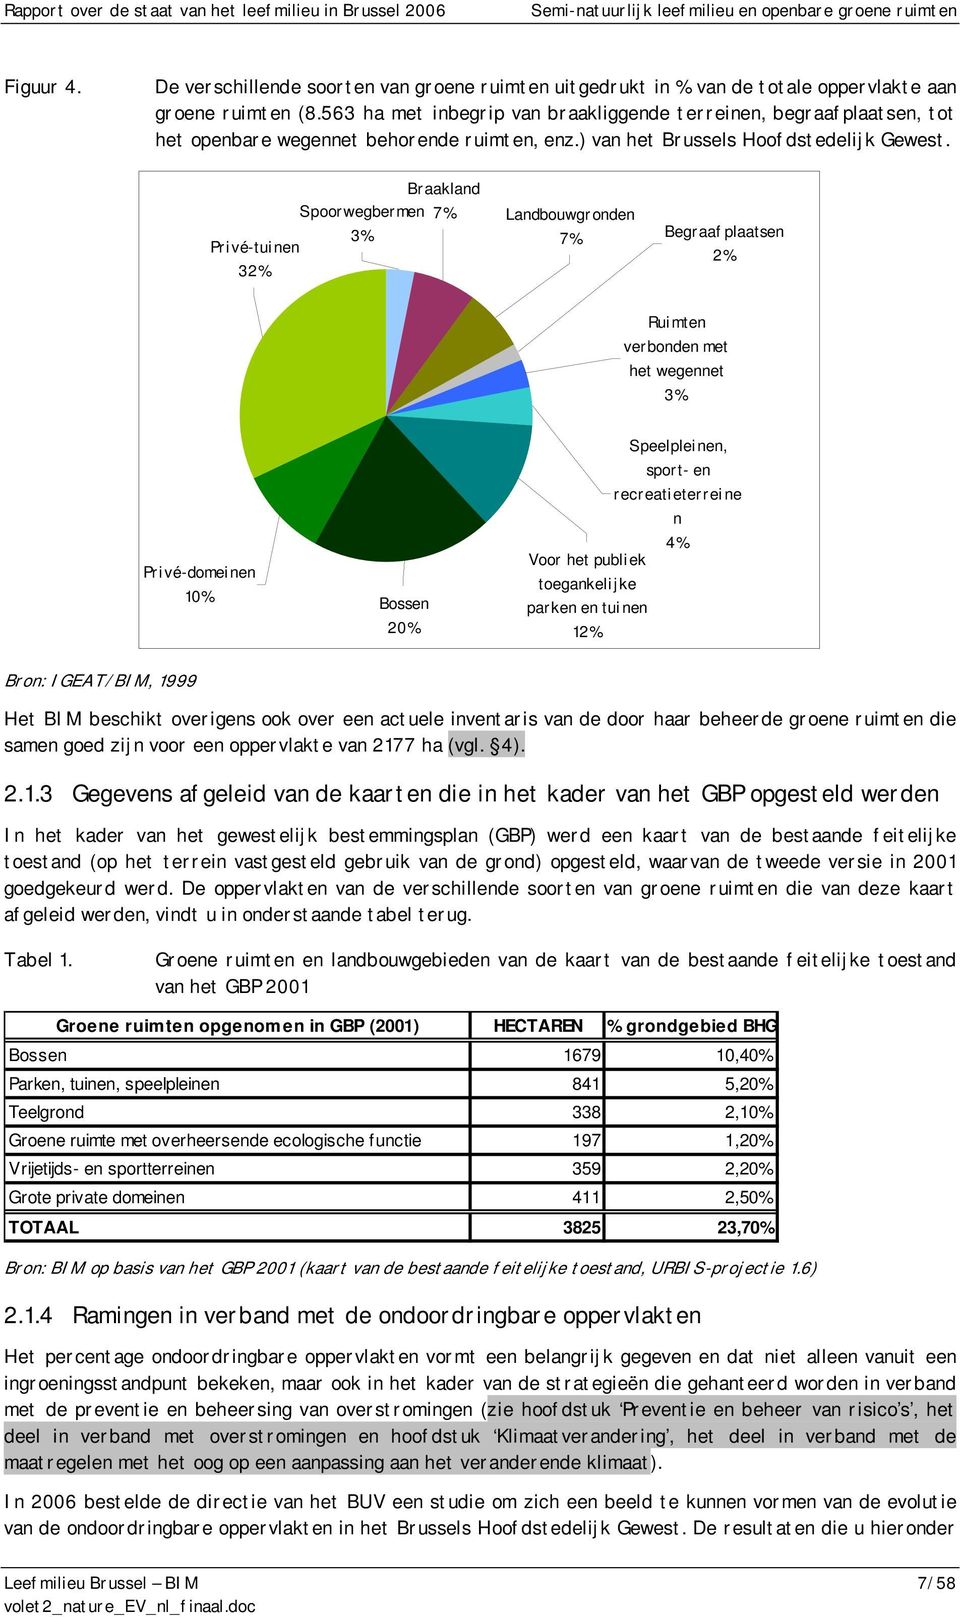 Braakland Spoorwegbermen 7% 3% Privé-tuinen 32% Landbouwgronden 7% Begraafplaatsen 2% Ruimten verbonden met het wegennet 3% Privé-domeinen 10% Bossen 20% Speelpleinen, sport- en recreatieterreine n